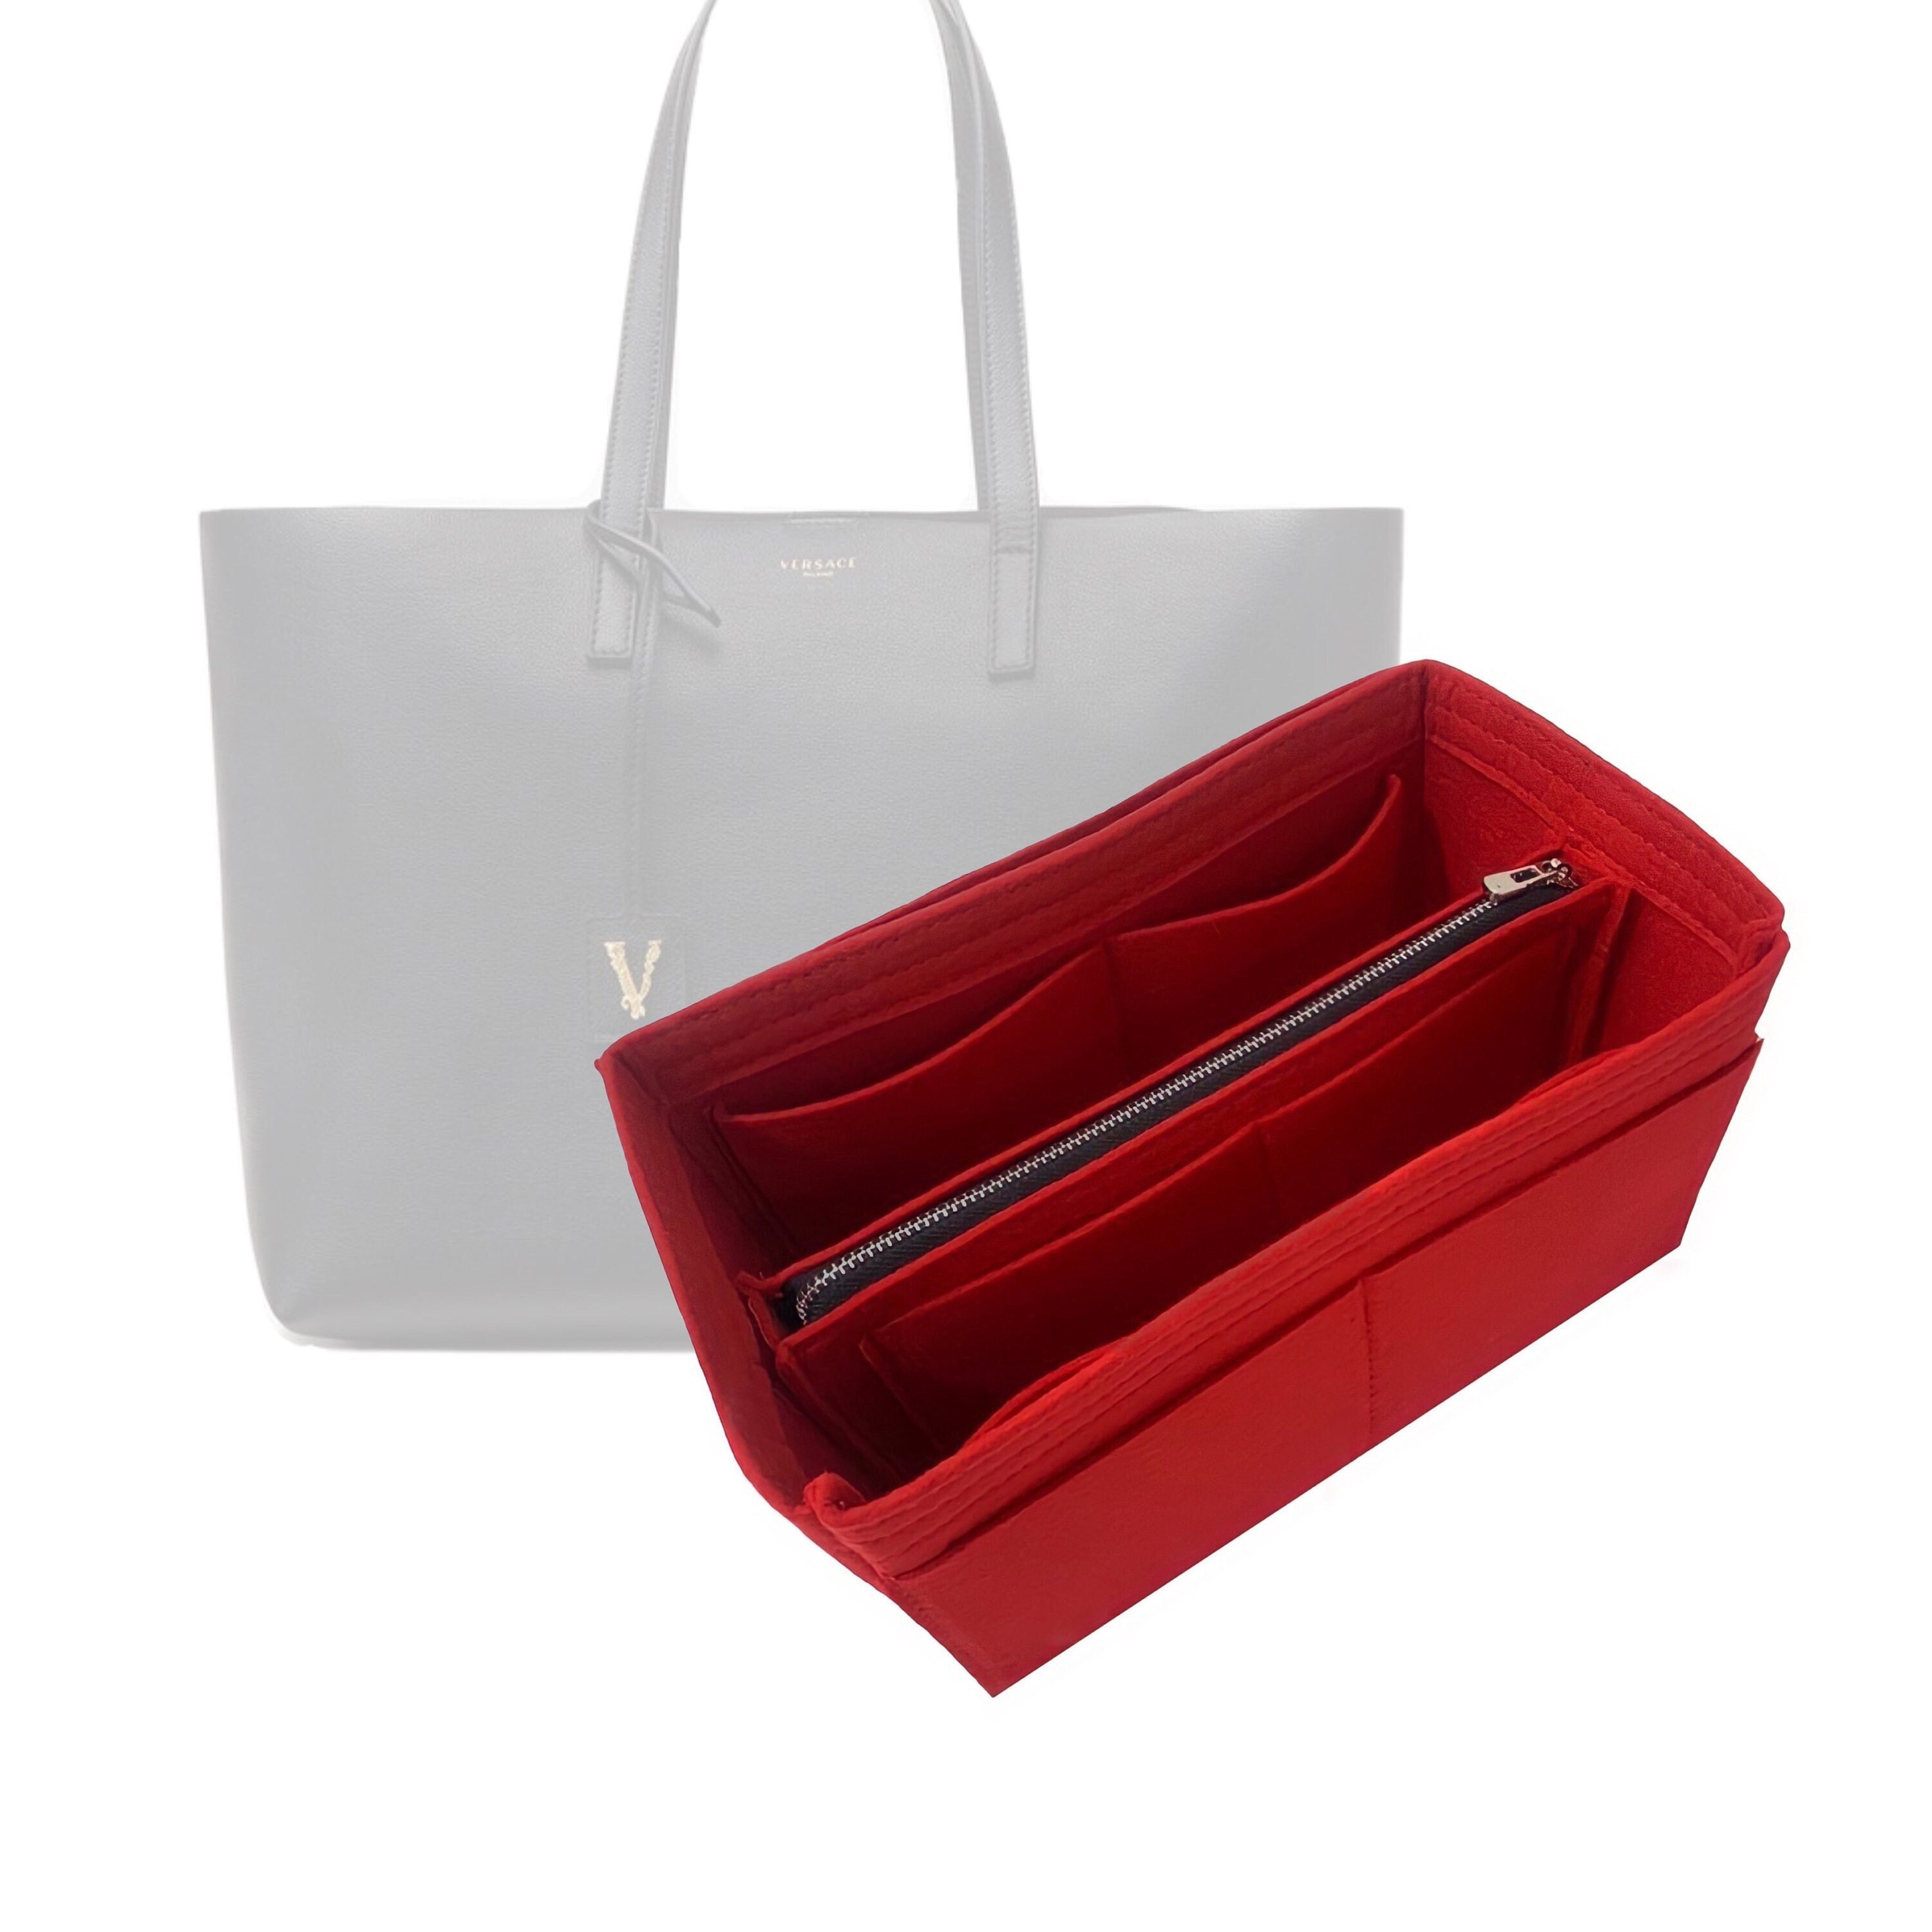 Versace 19V69 Abbigliamento Sportivo Italy Red Shoulder Tote Bag Purse